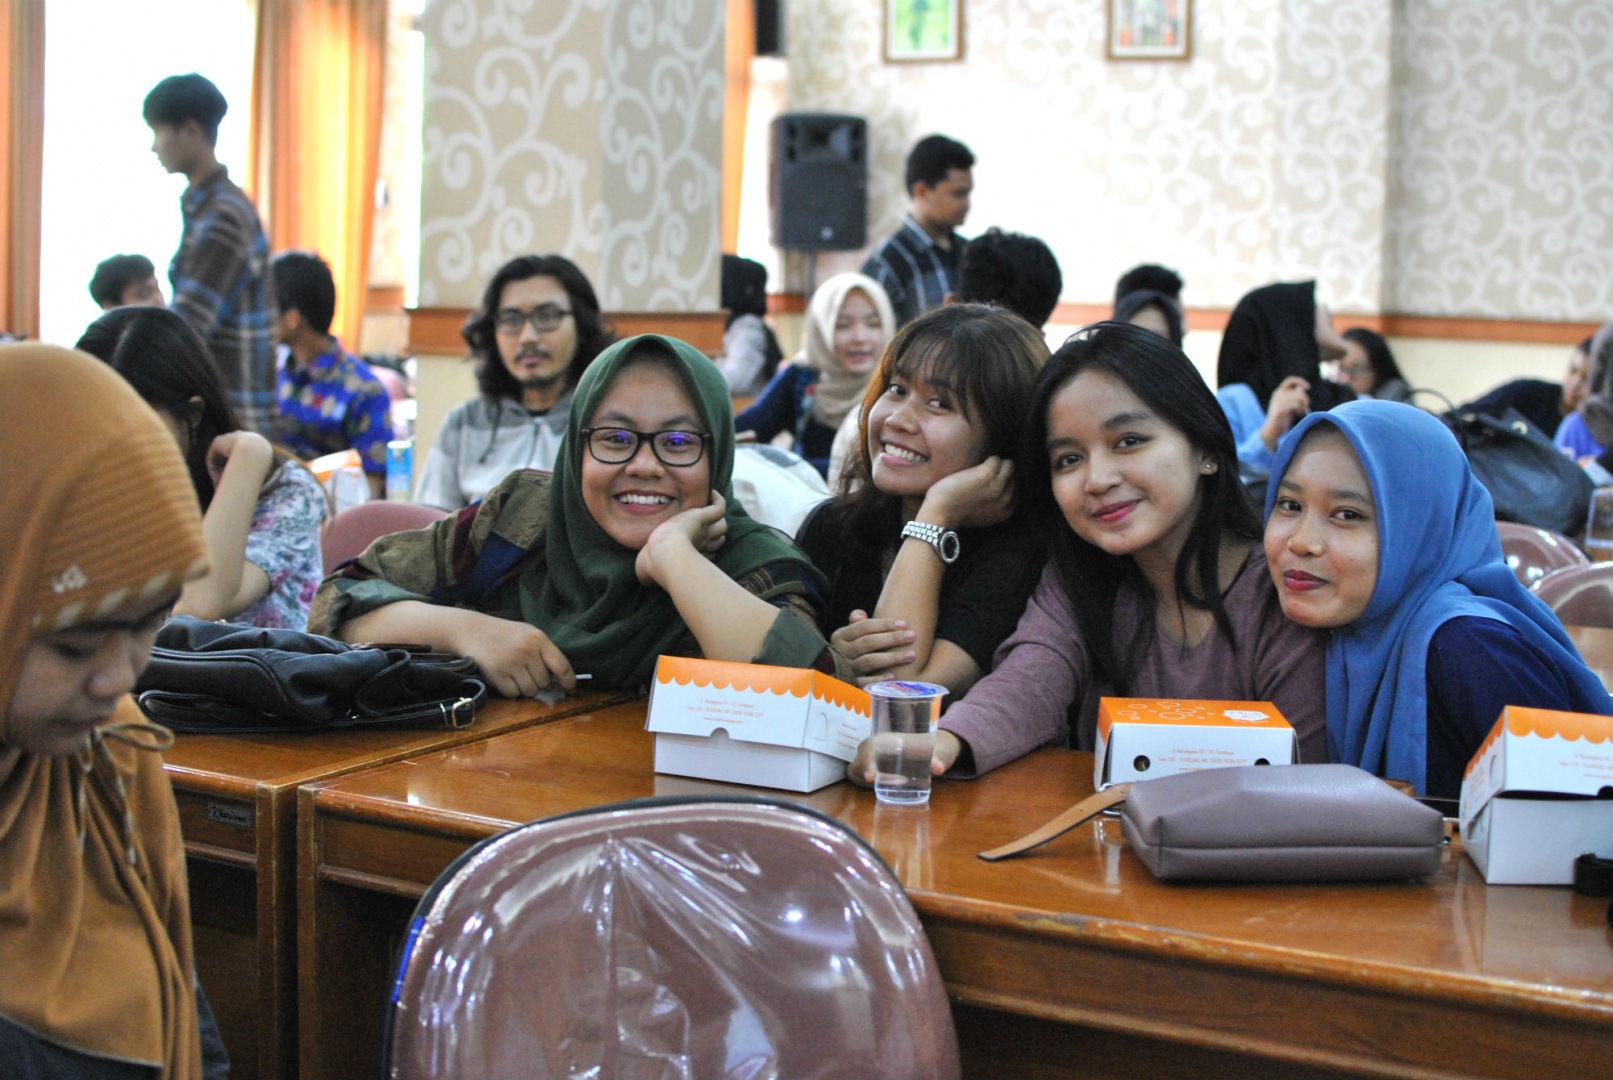 Uniwersytet Airlangga w Surabai, Indonezja. Trwa spotkanie na temat możliwości studiowania na Uniwersytecie Opolskim, prowadzone przez dra Michała Wanke